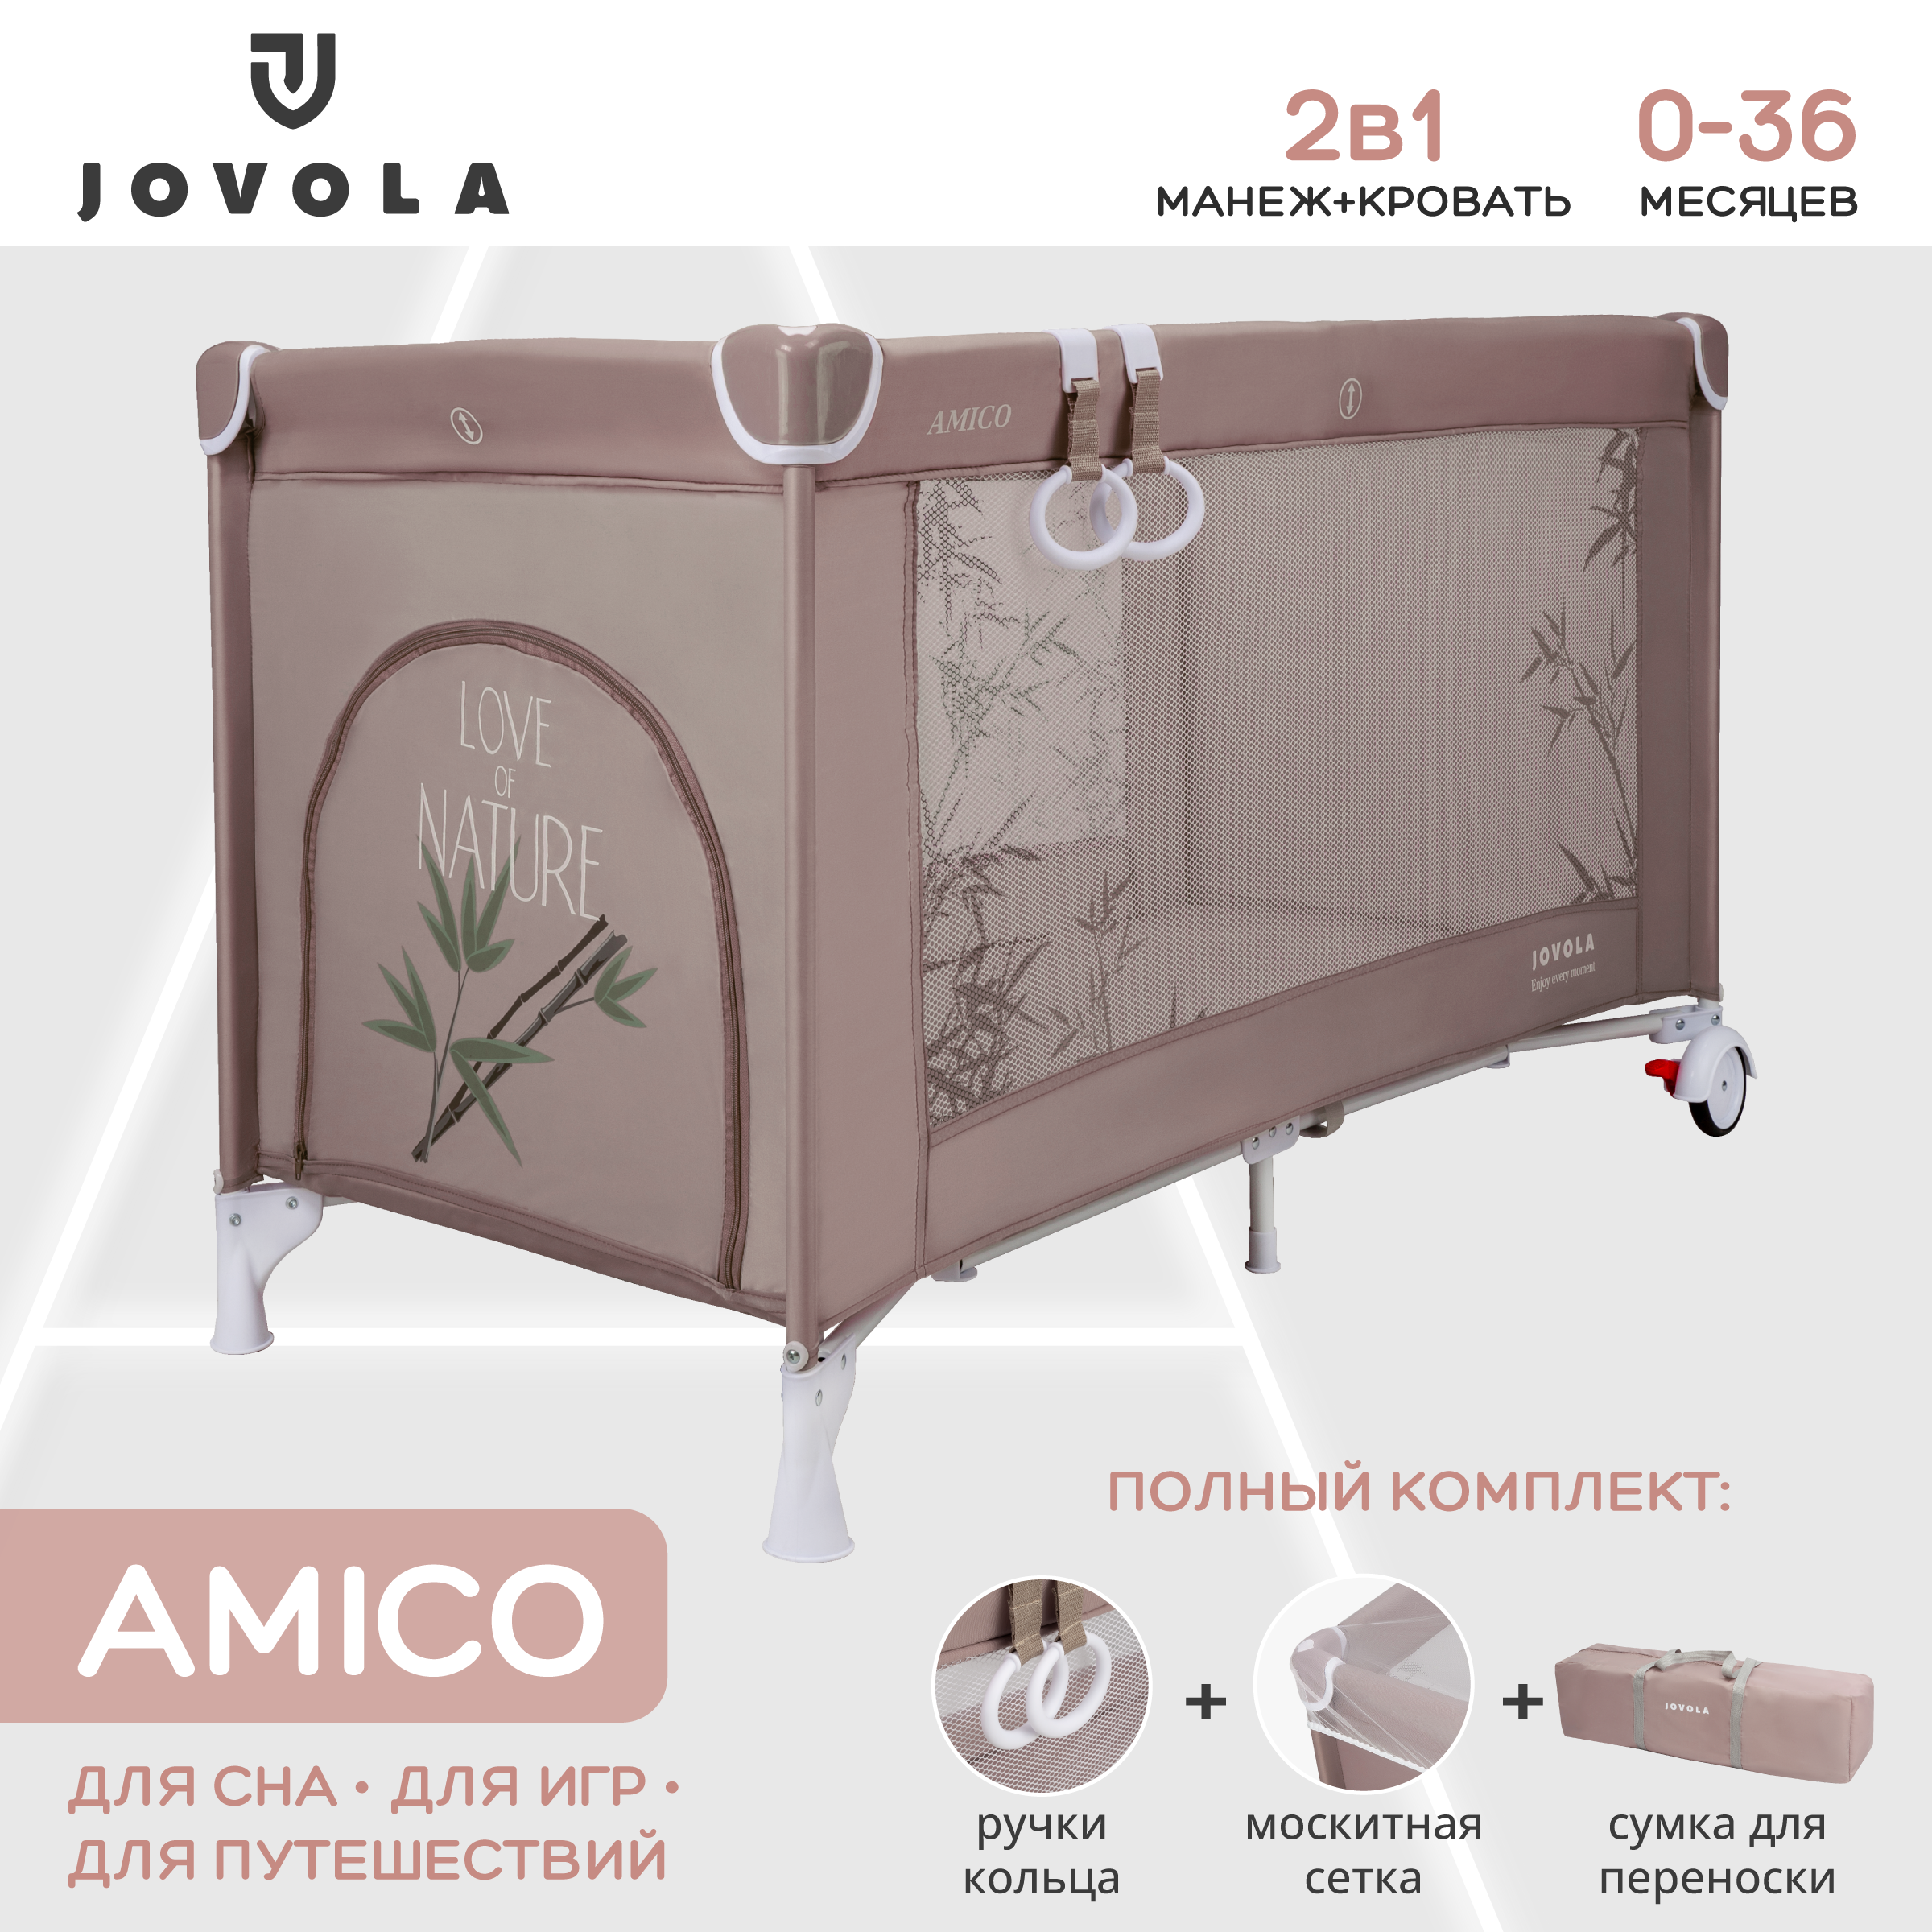 Манеж кровать детский Indigo JOVOLA AMICO складной 1 уровень мокко бамбук комплект прямых фиксированных обрезиненных штанг 5 шт от 10 до 20кг hasttings digger hd51g2a 10 20